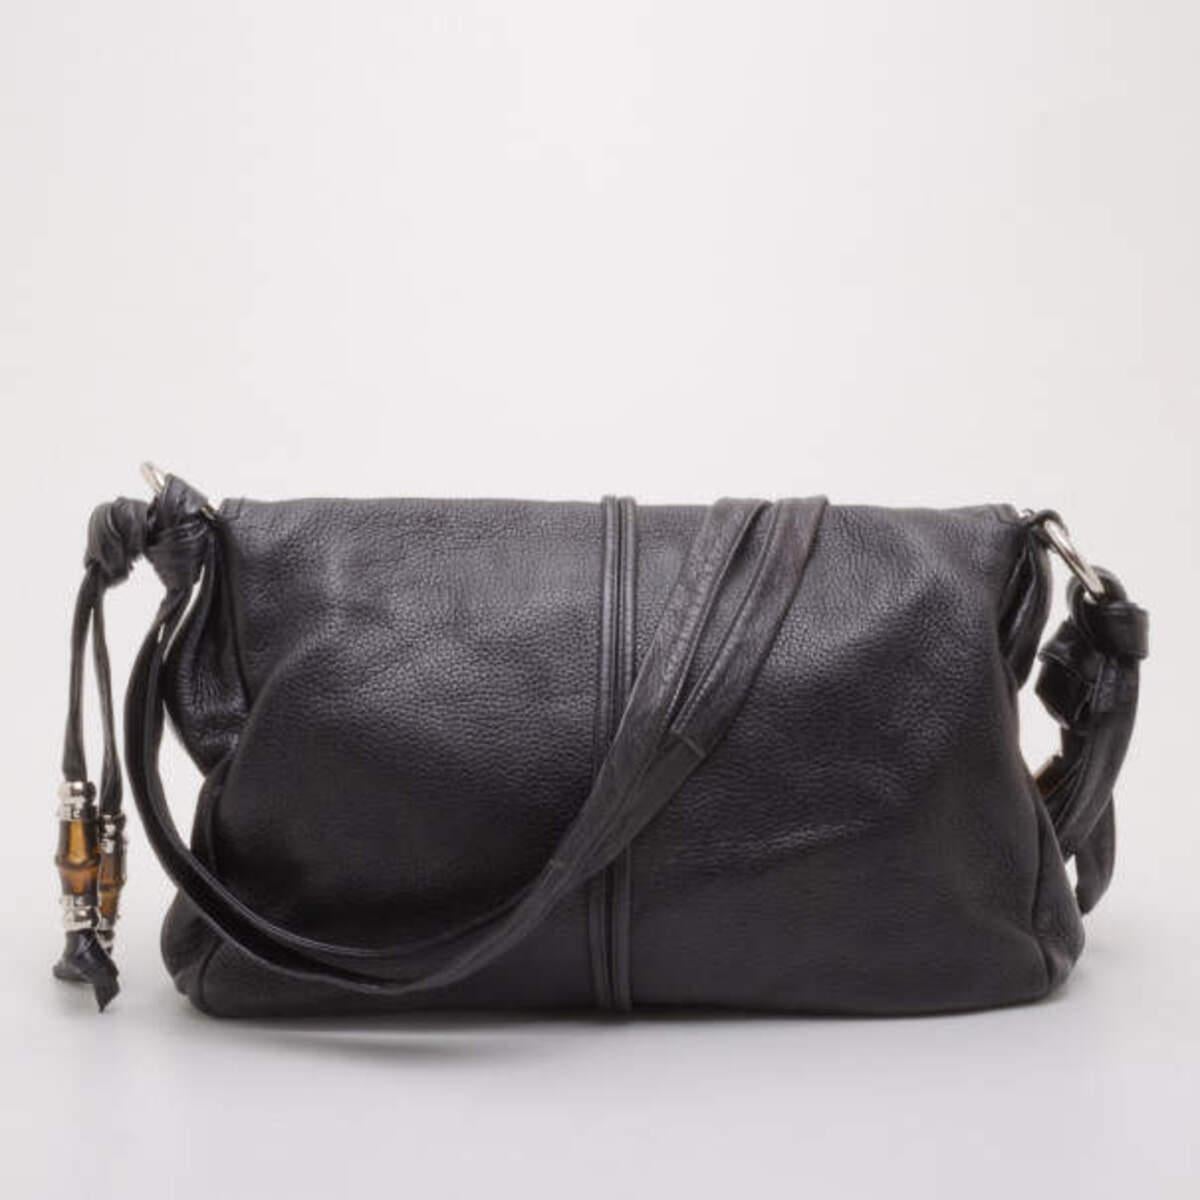 Dieser Jungle Messenger von Gucci ist keine gewöhnliche schwarze Handtasche. Sie ist aus geschmeidigem schwarzem Leder gefertigt und mit den für Gucci charakteristischen Bambusakzenten, schicken Quasten und silbernen Beschlägen verziert. Das Innere